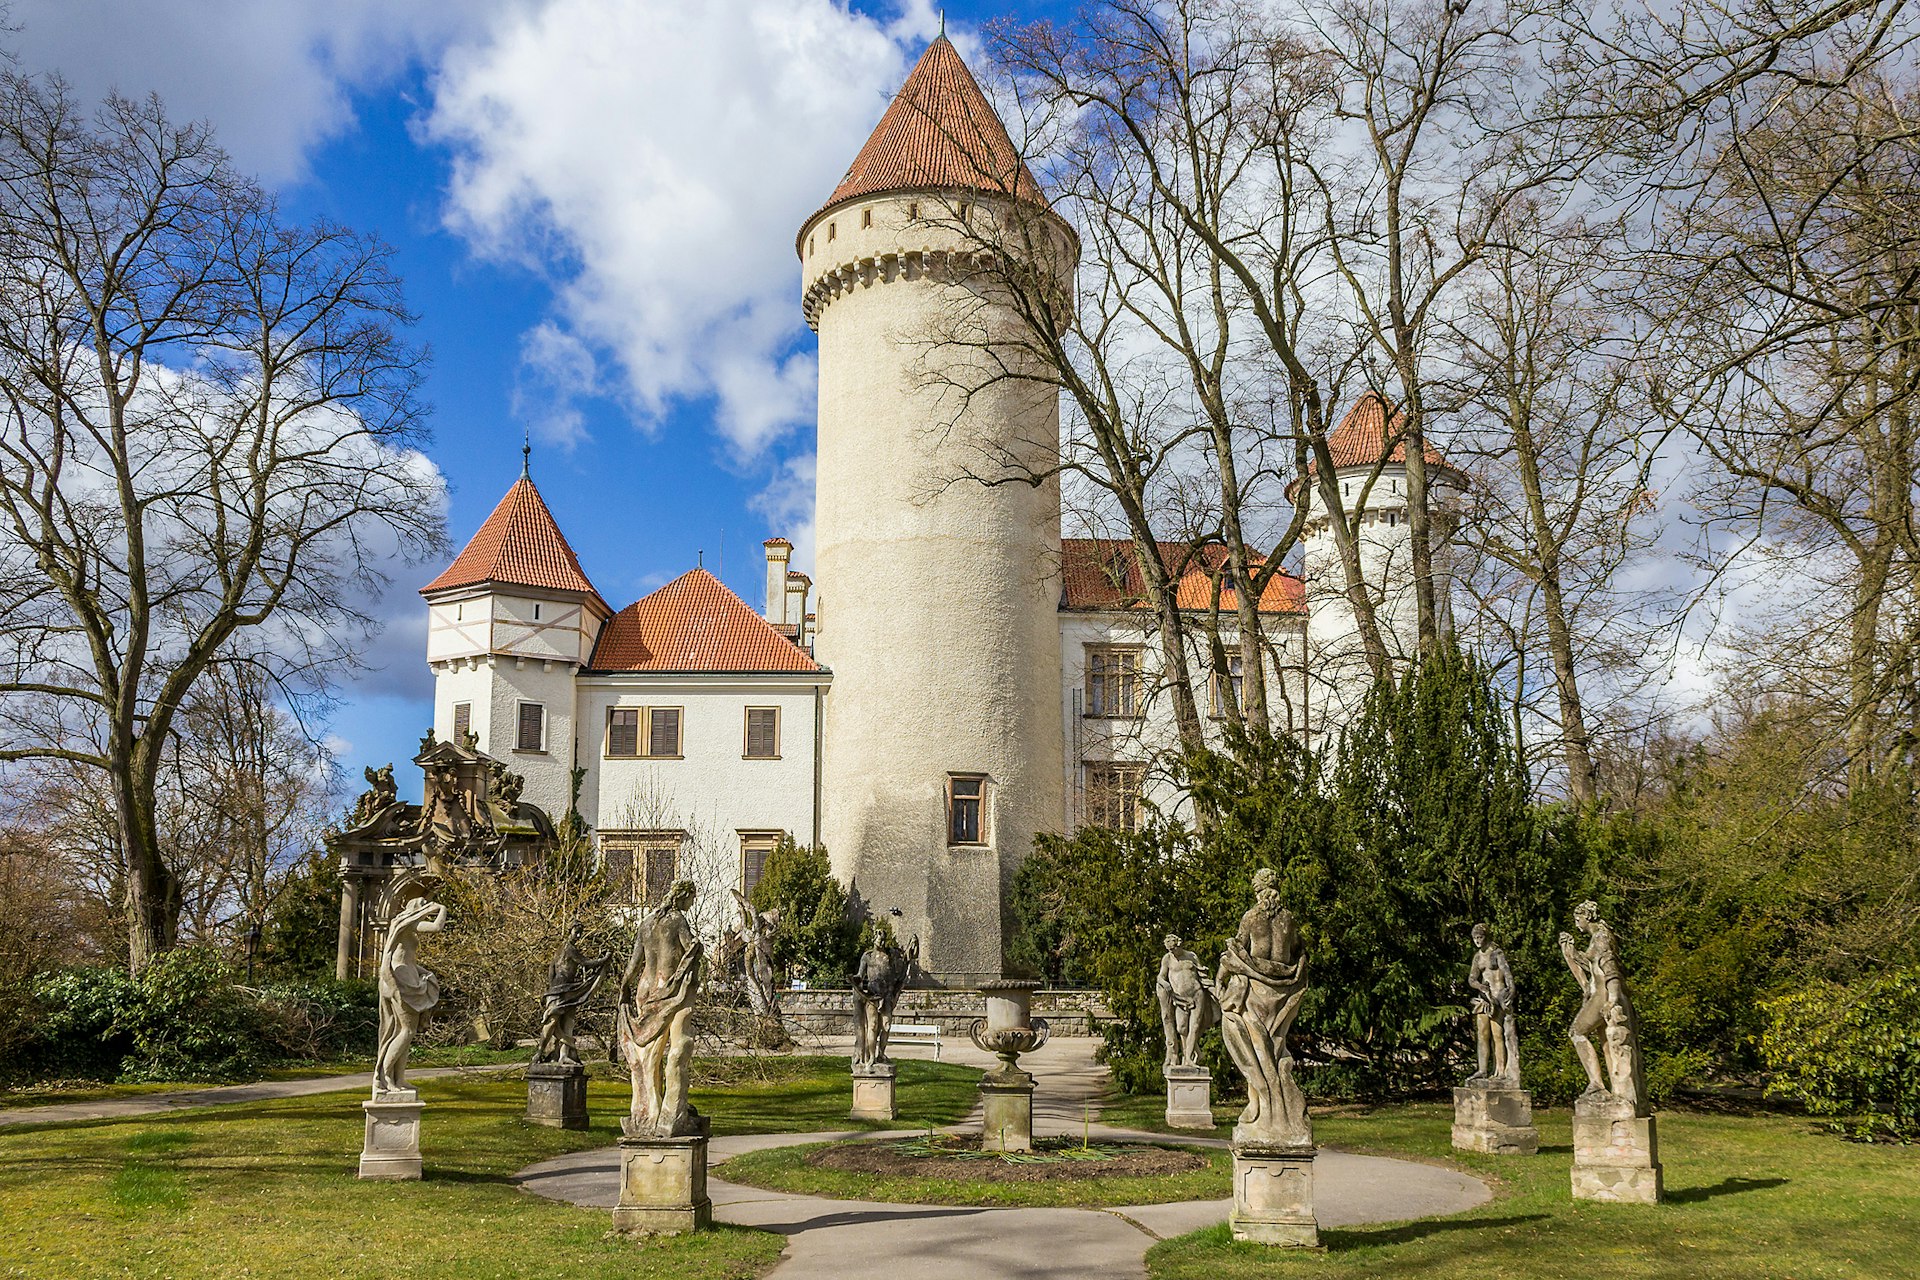 Statues in the grounds of Konopiste Castle in Czech Republic